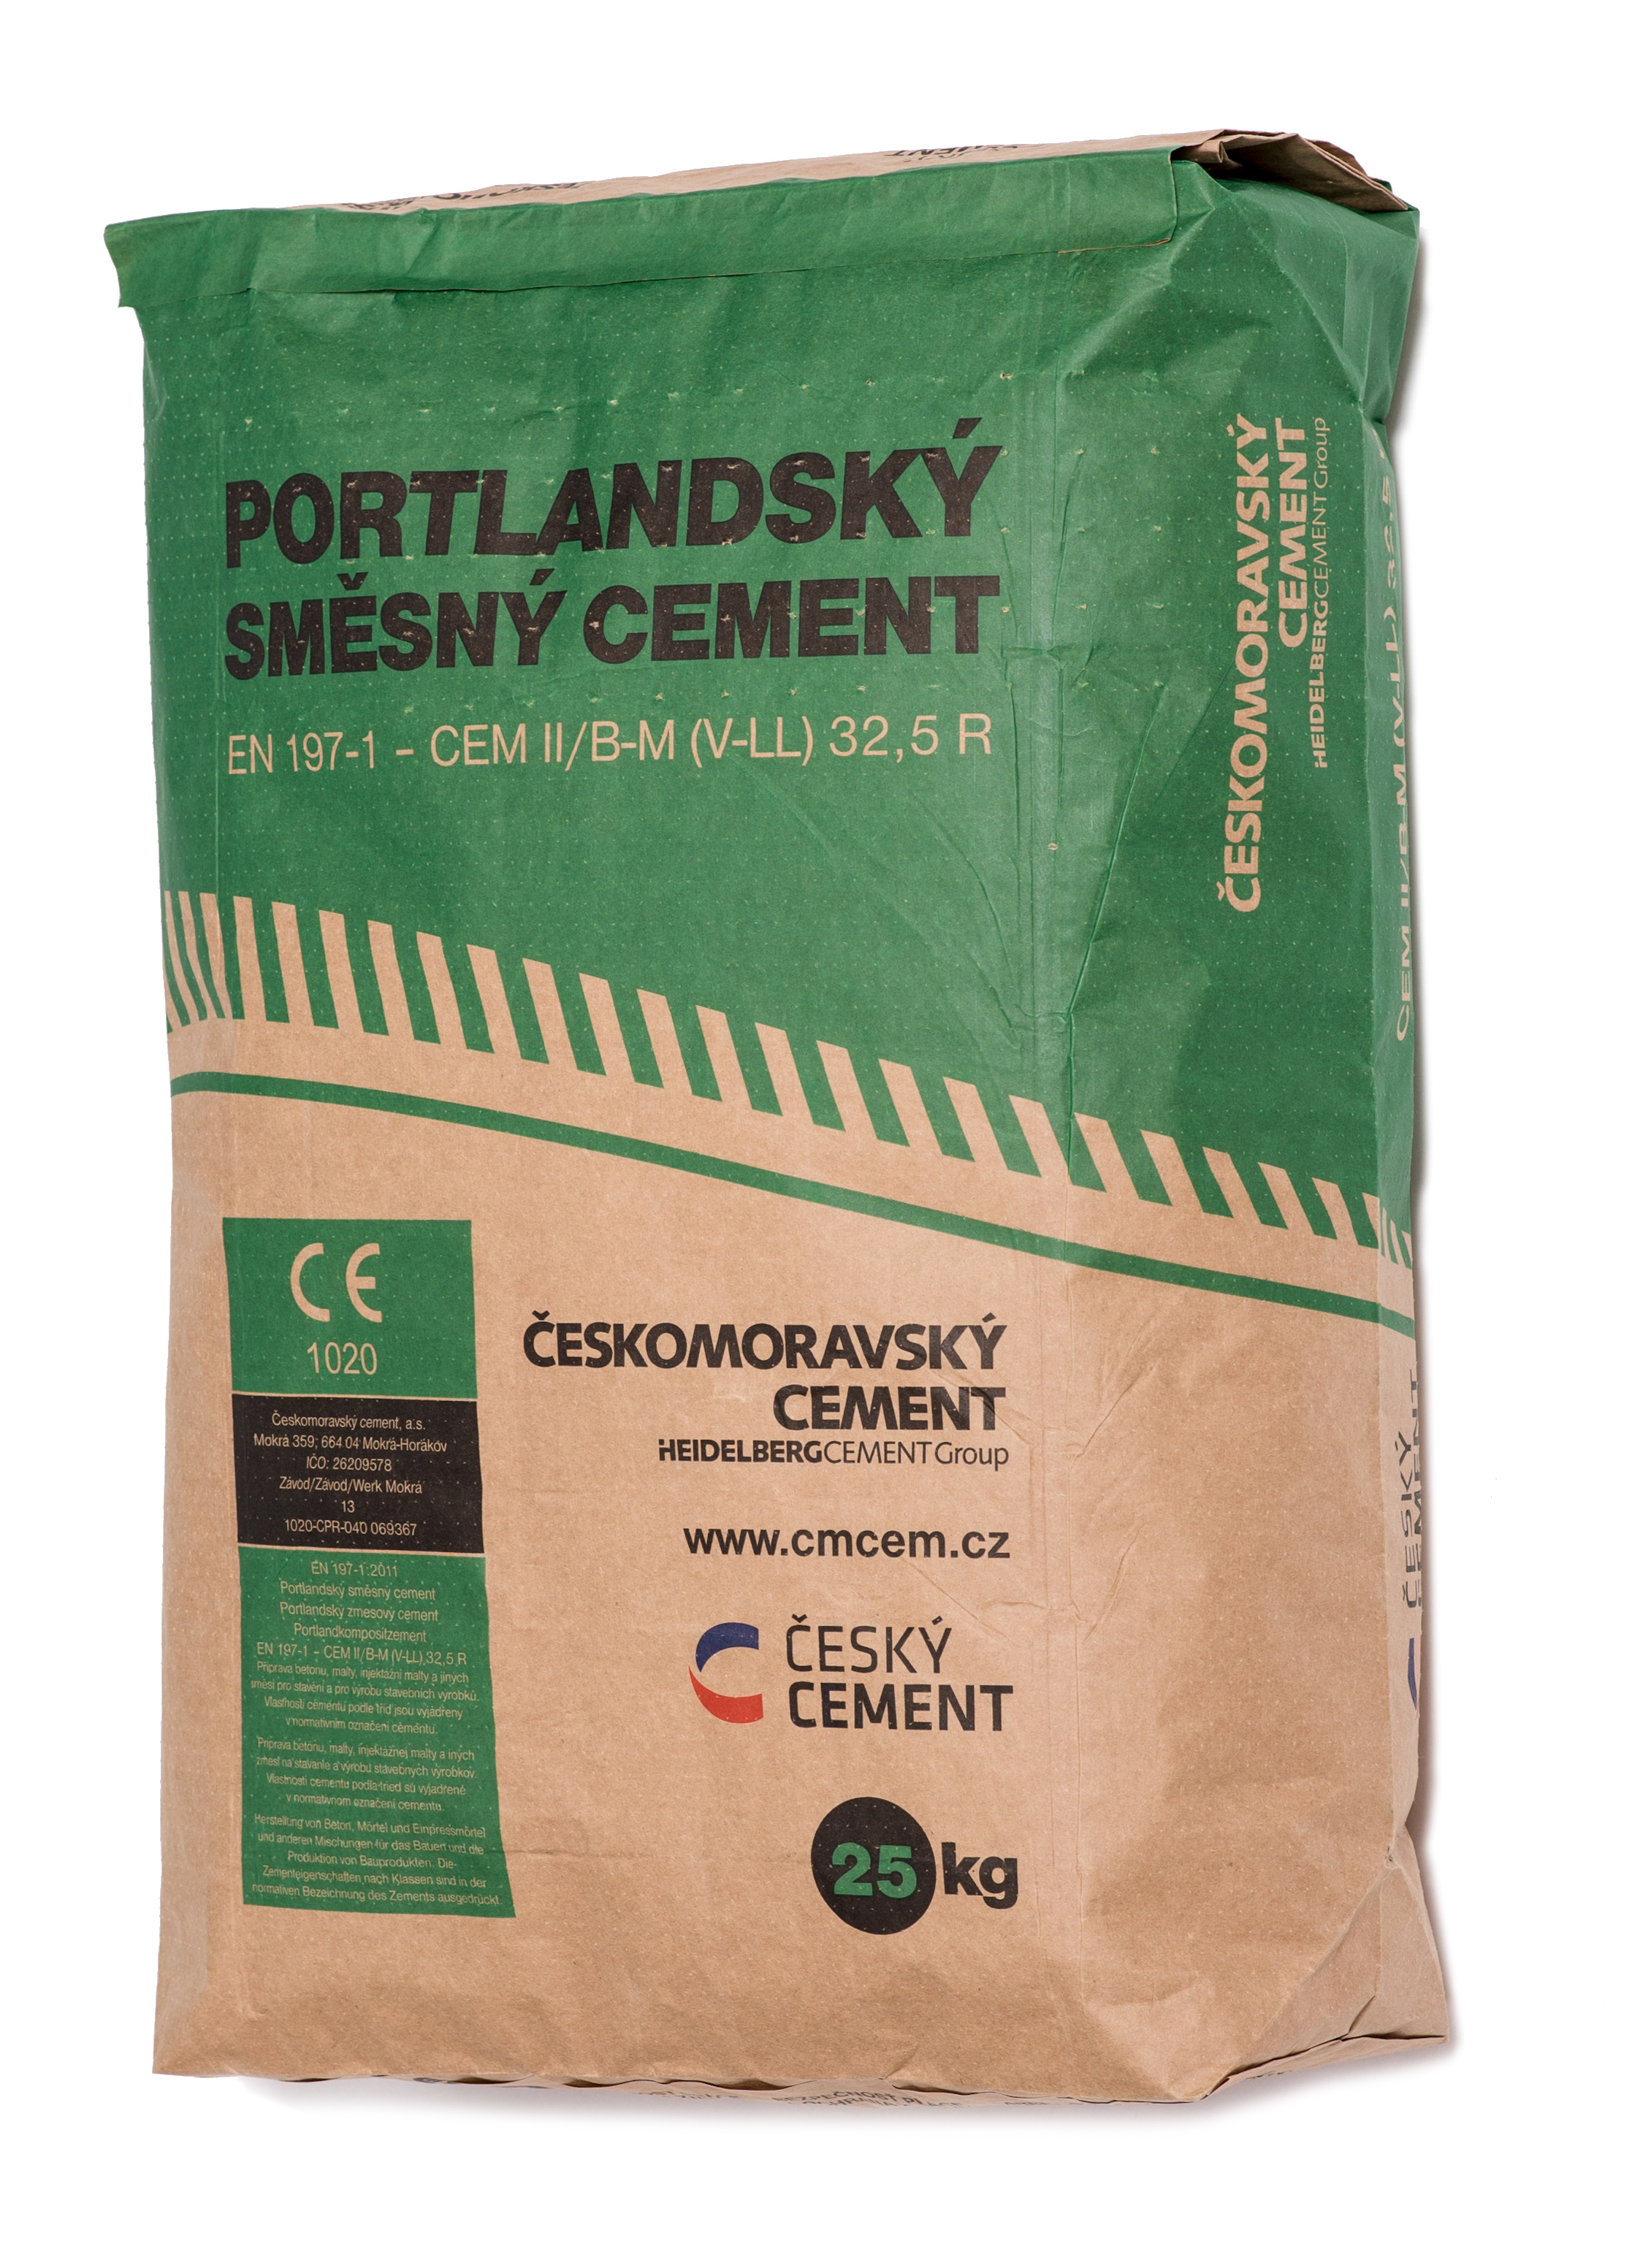 Balený portlandský směsný cement CEM II/B-M (V-LL) 32,5 R. 